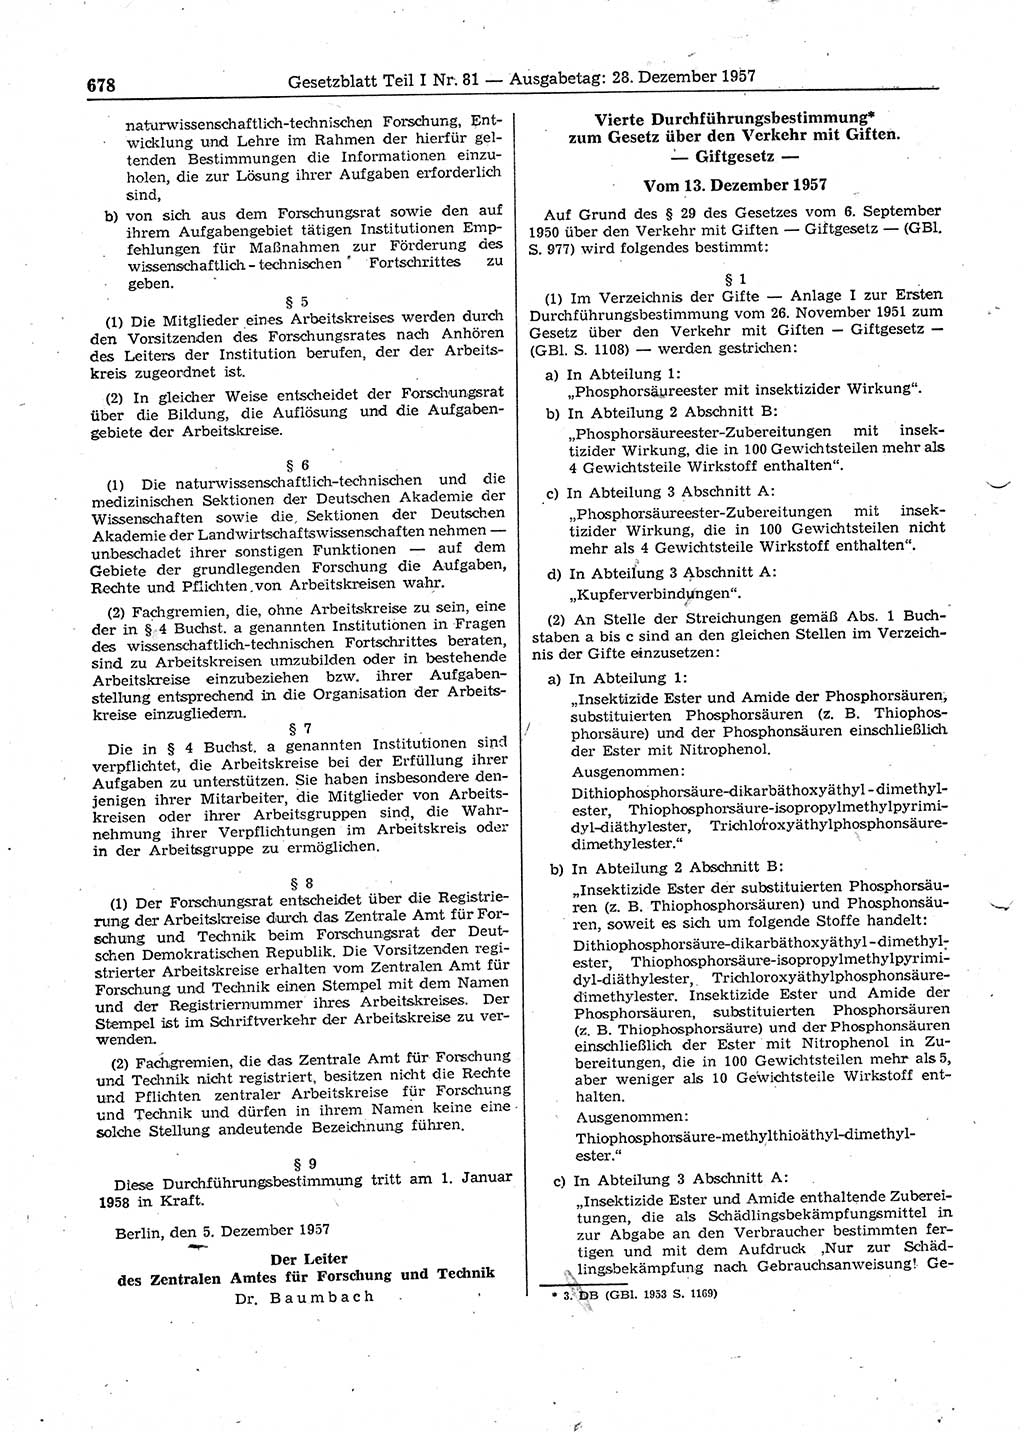 Gesetzblatt (GBl.) der Deutschen Demokratischen Republik (DDR) Teil Ⅰ 1957, Seite 678 (GBl. DDR Ⅰ 1957, S. 678)